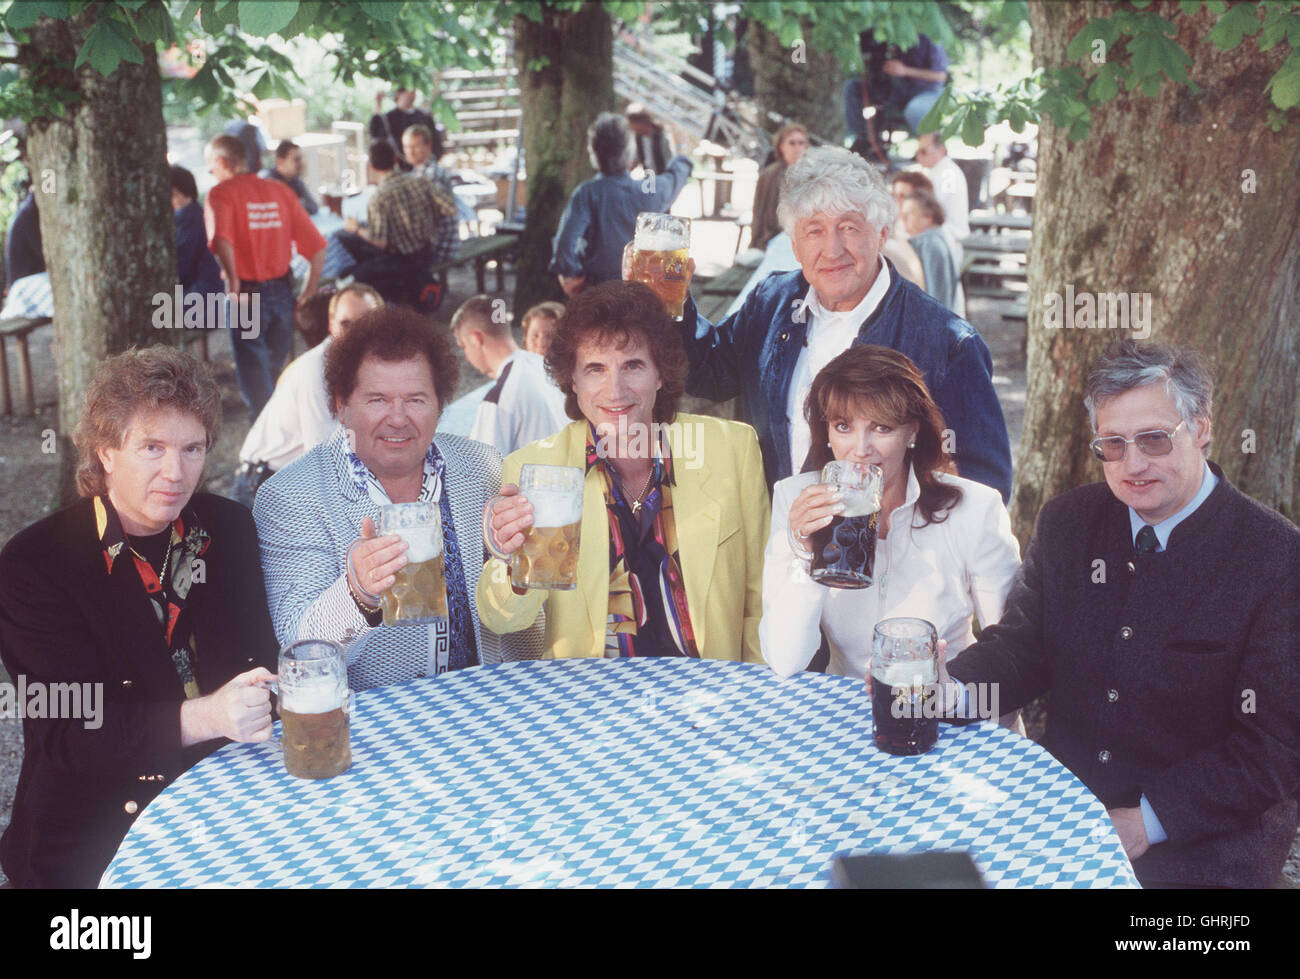 Strasse der Lieder - Gastgeber GOTTHILF FISCHER und PETRA SChörMANN, die ehemalige Miss World, präsentieren den Starnberger See von seiner schönsten Seite. Hier genießen sie ein Bier mit den FLIPPERS und PRINZ LUITPOLD VON BAYERN. Stock Photo